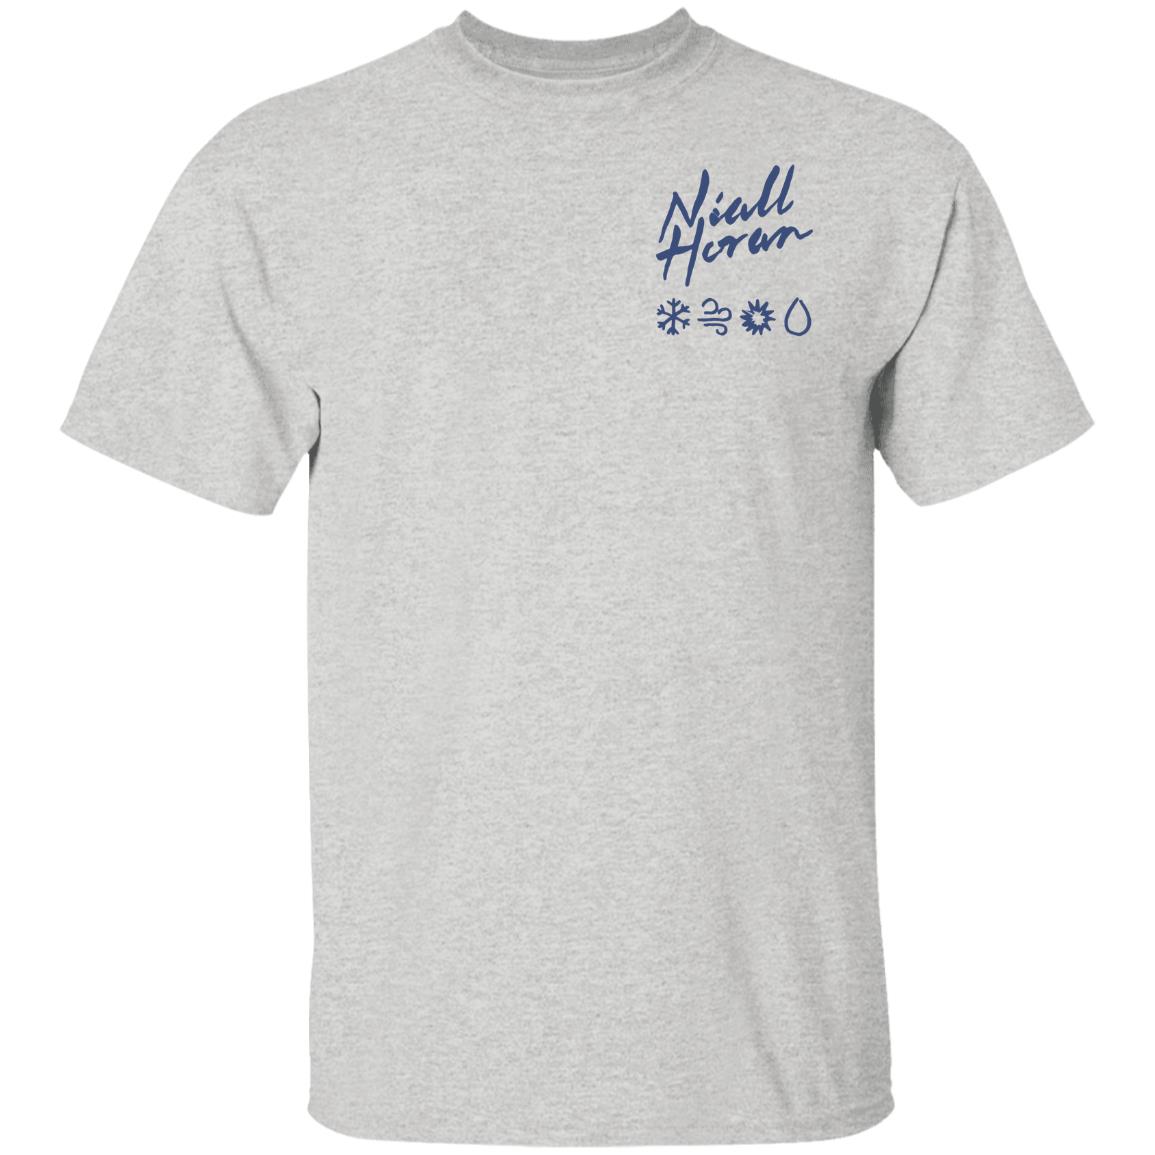 Everywhere Graphic Niall Horan Unisex T-Shirt - Teeruto